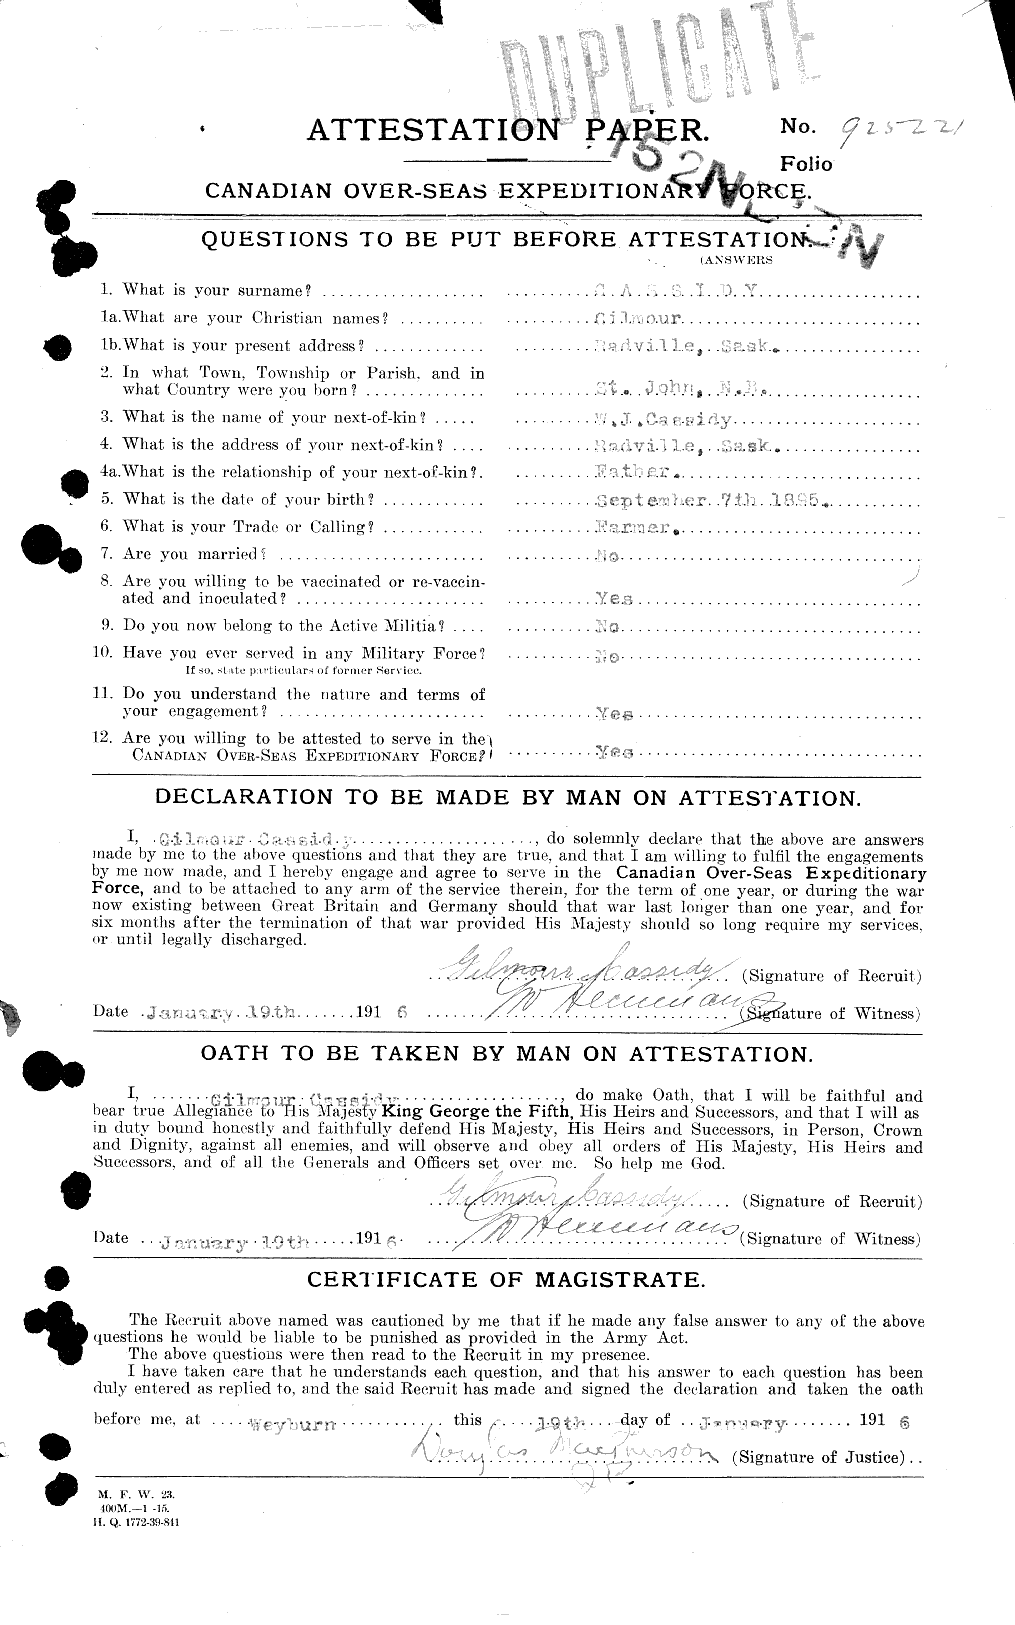 Dossiers du Personnel de la Première Guerre mondiale - CEC 007214a